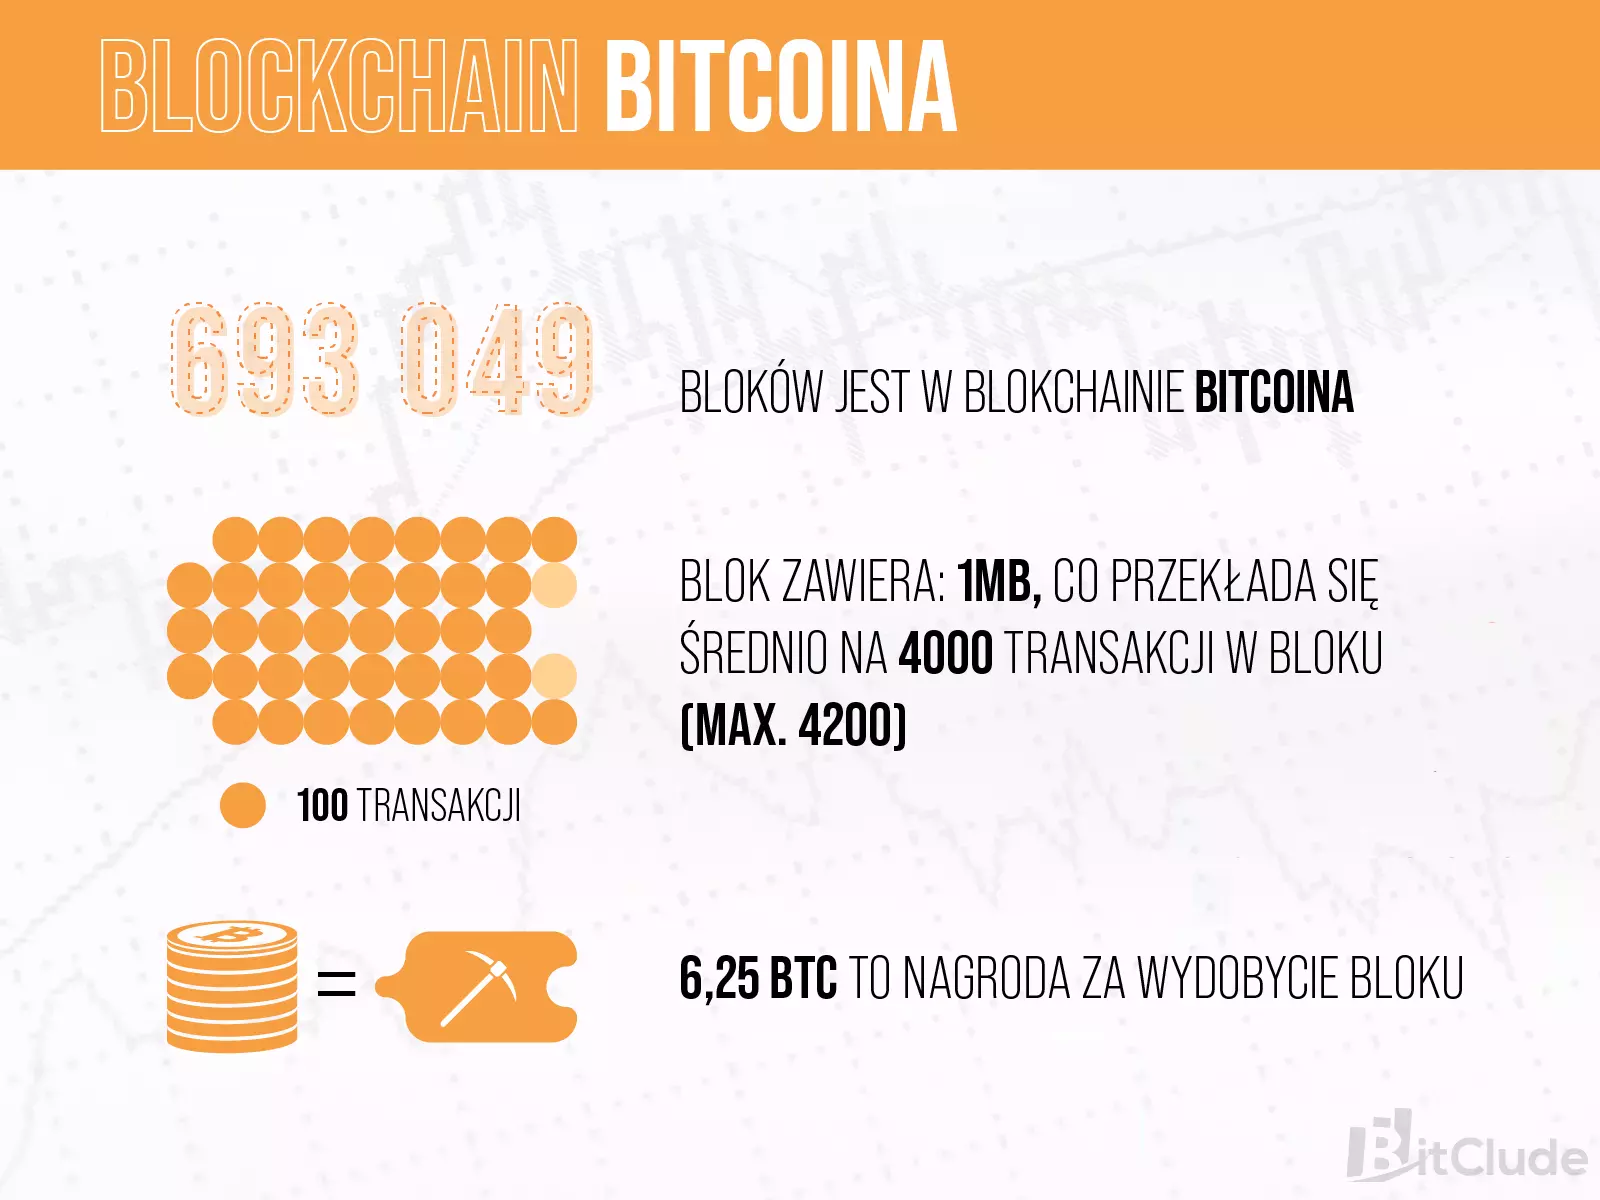 Blockchain Bitcoina zawiera 693 049 bloków. W każdym z bloków znajduje się około 4000 transakcji.